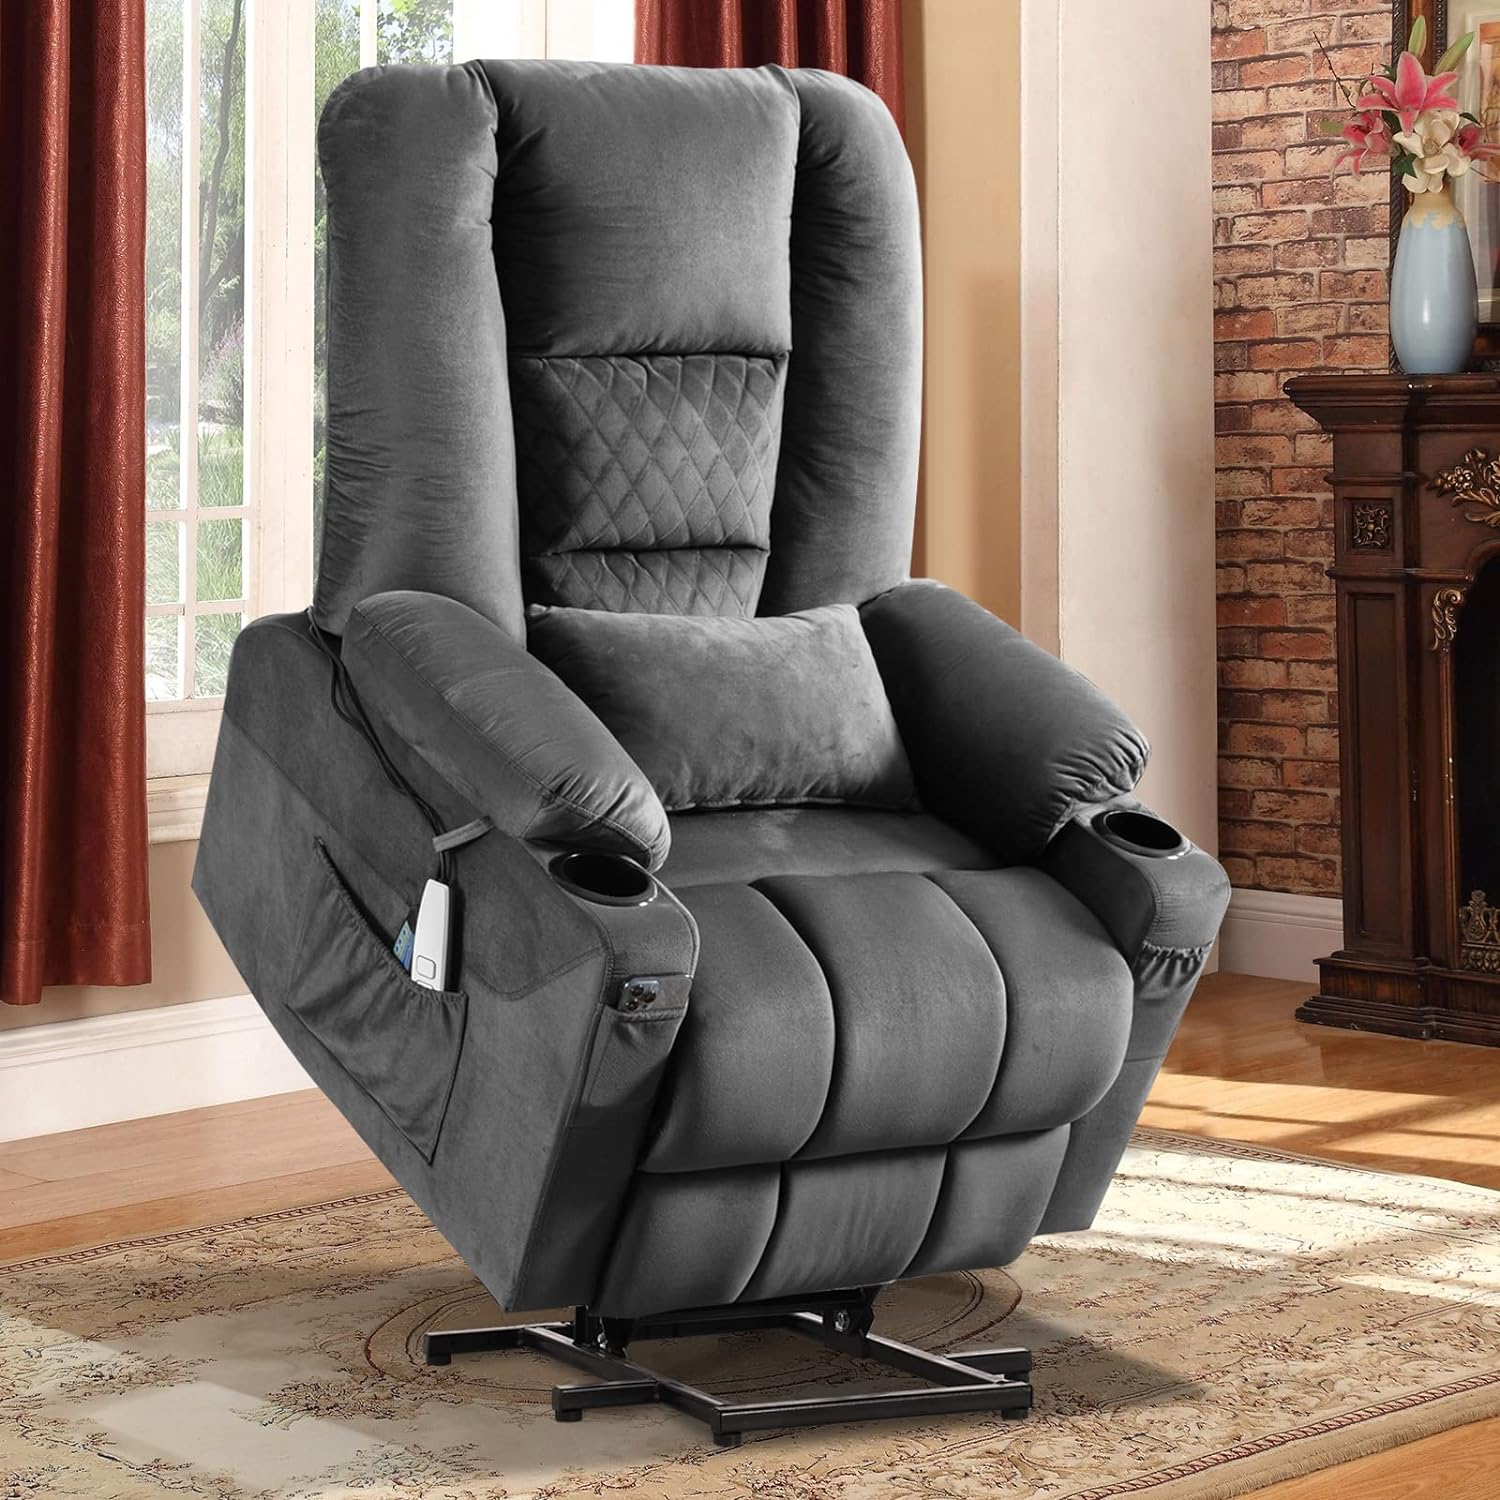 Кресло с откидной спинкой Power Lift, удобное кресло-кровать, диван-серый